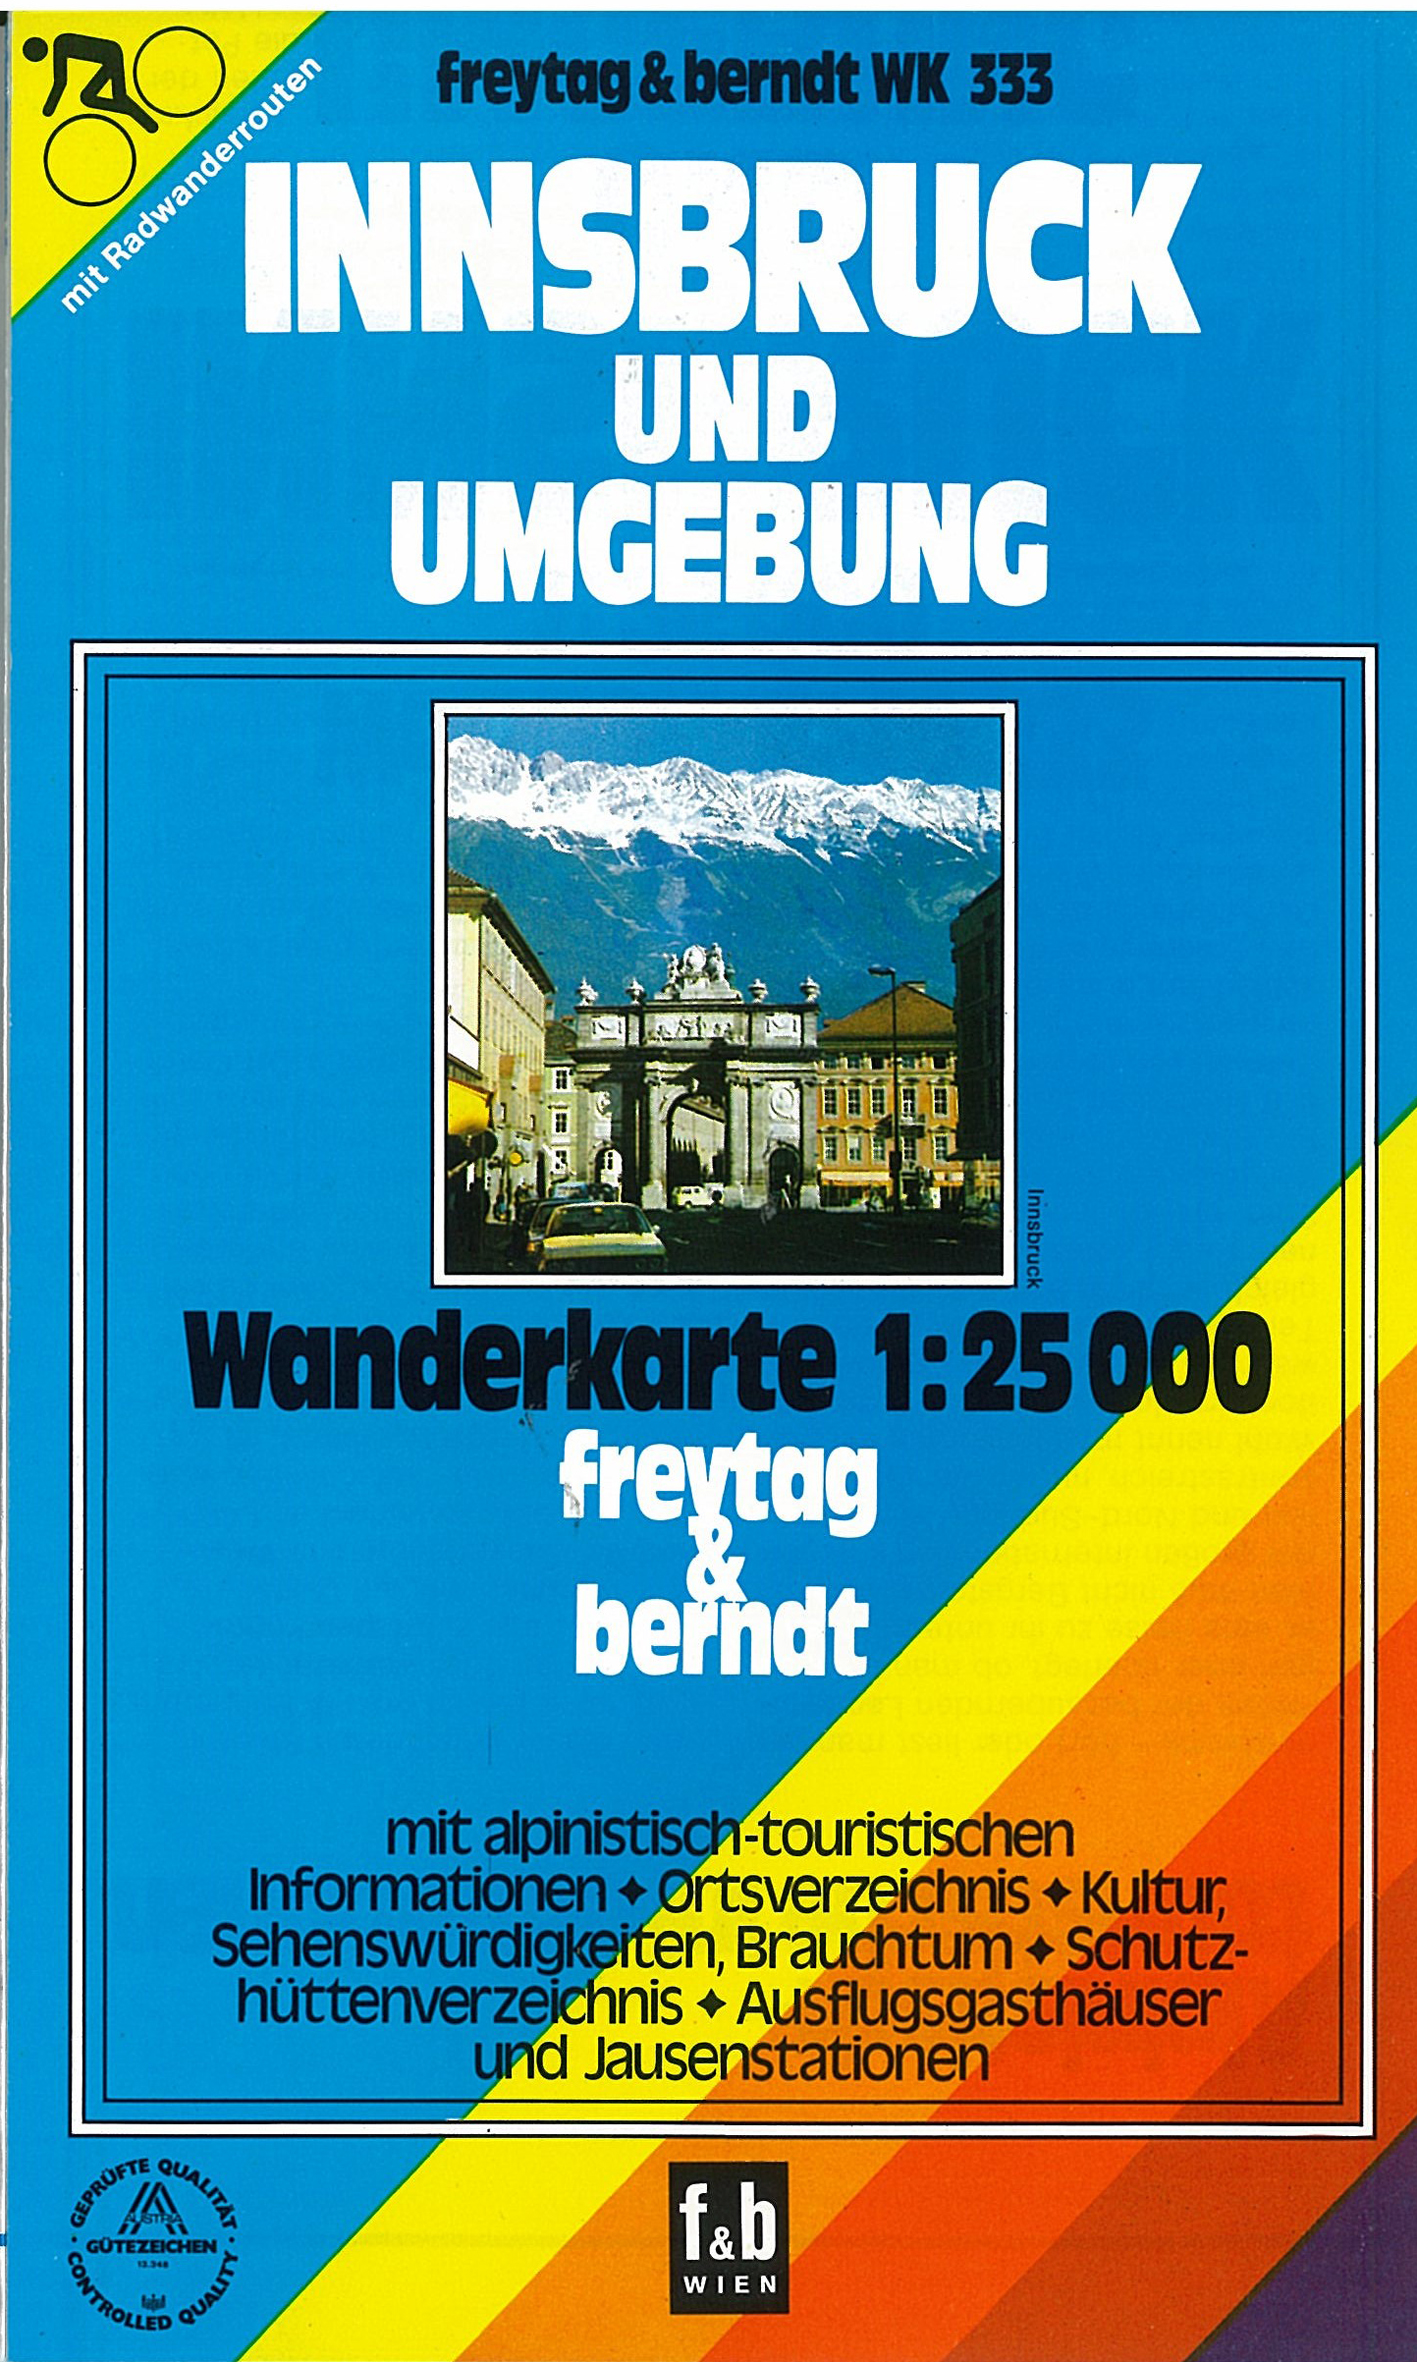 WK333a Innsbruck und Umgebung 1:25t turistická mapa FB